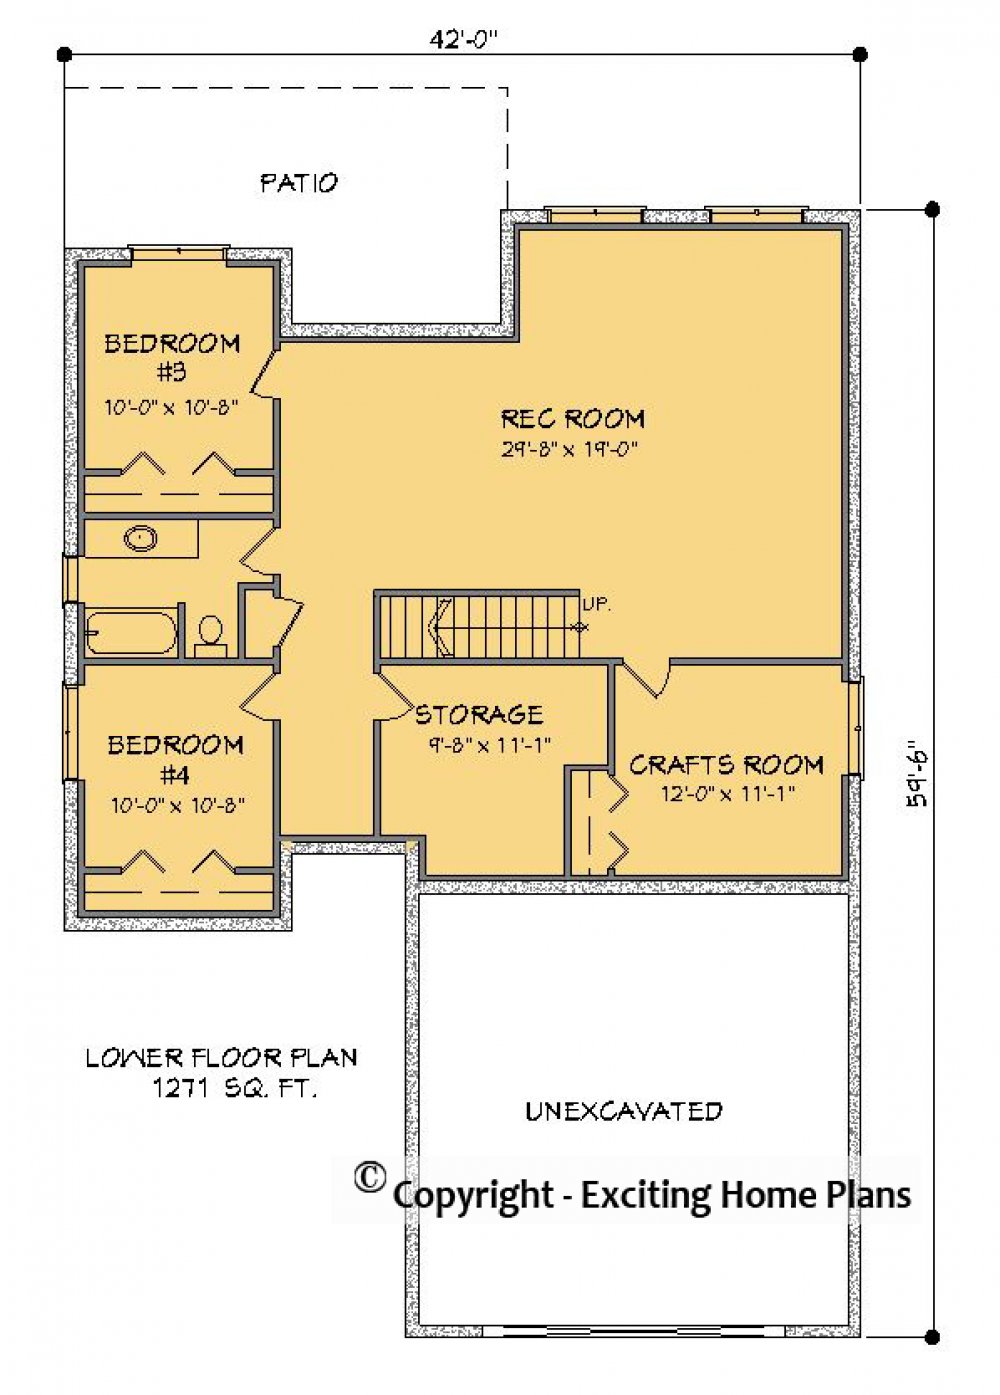 House Plan E1578-10  Lower Floor Plan